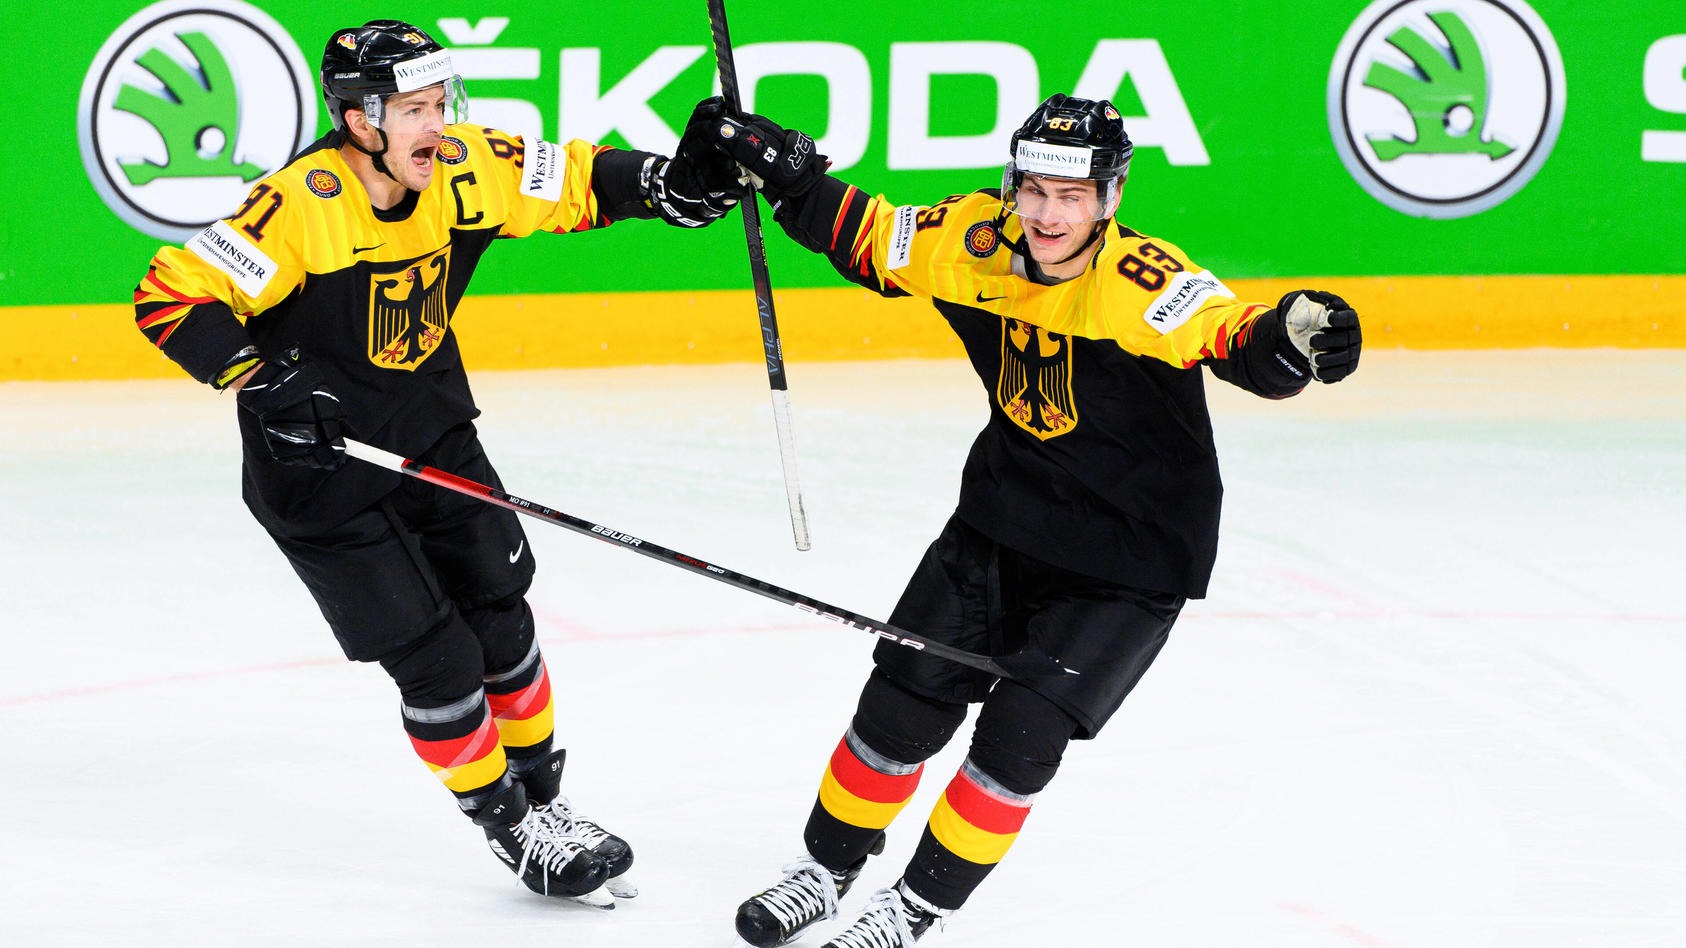 Eishockey-WM Deutschland nach Sieg gegen Lettland im Viertelfinale